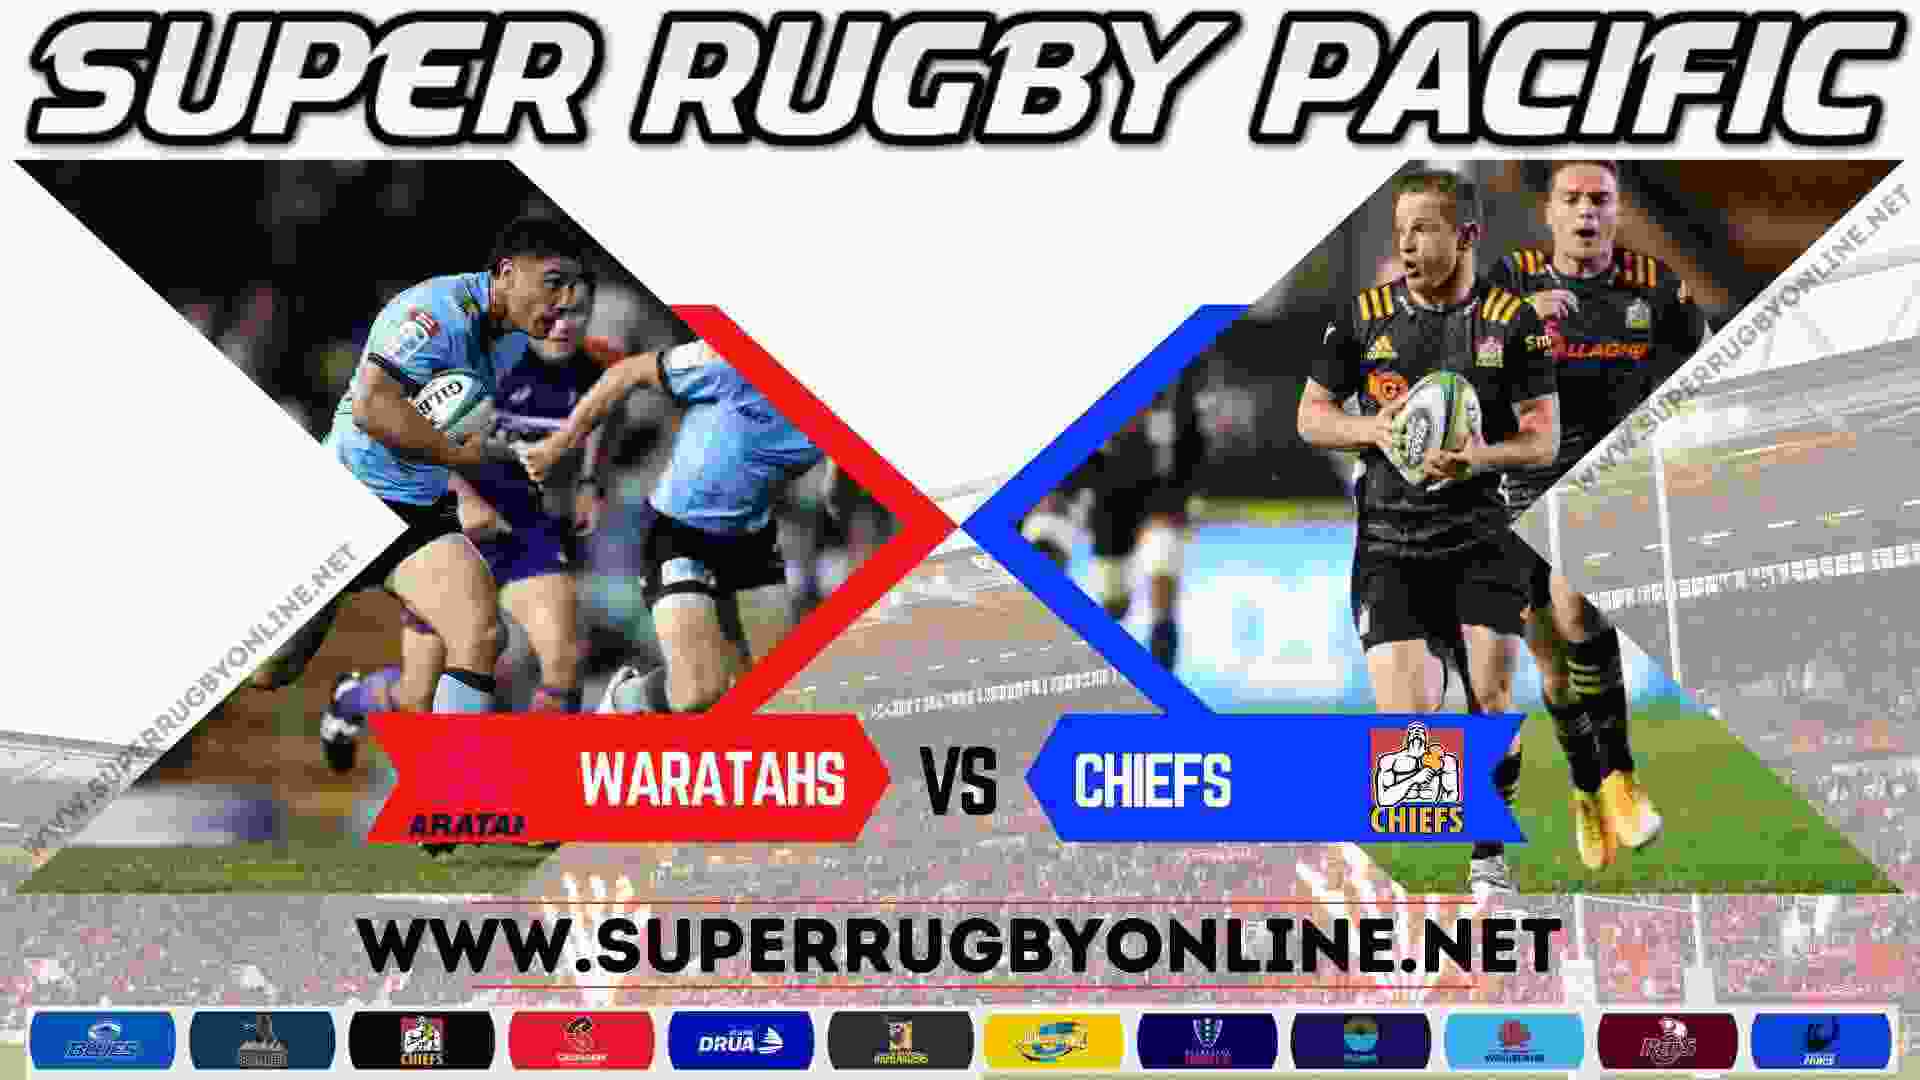 waratahs-vs-chiefs-rugby-live-stream